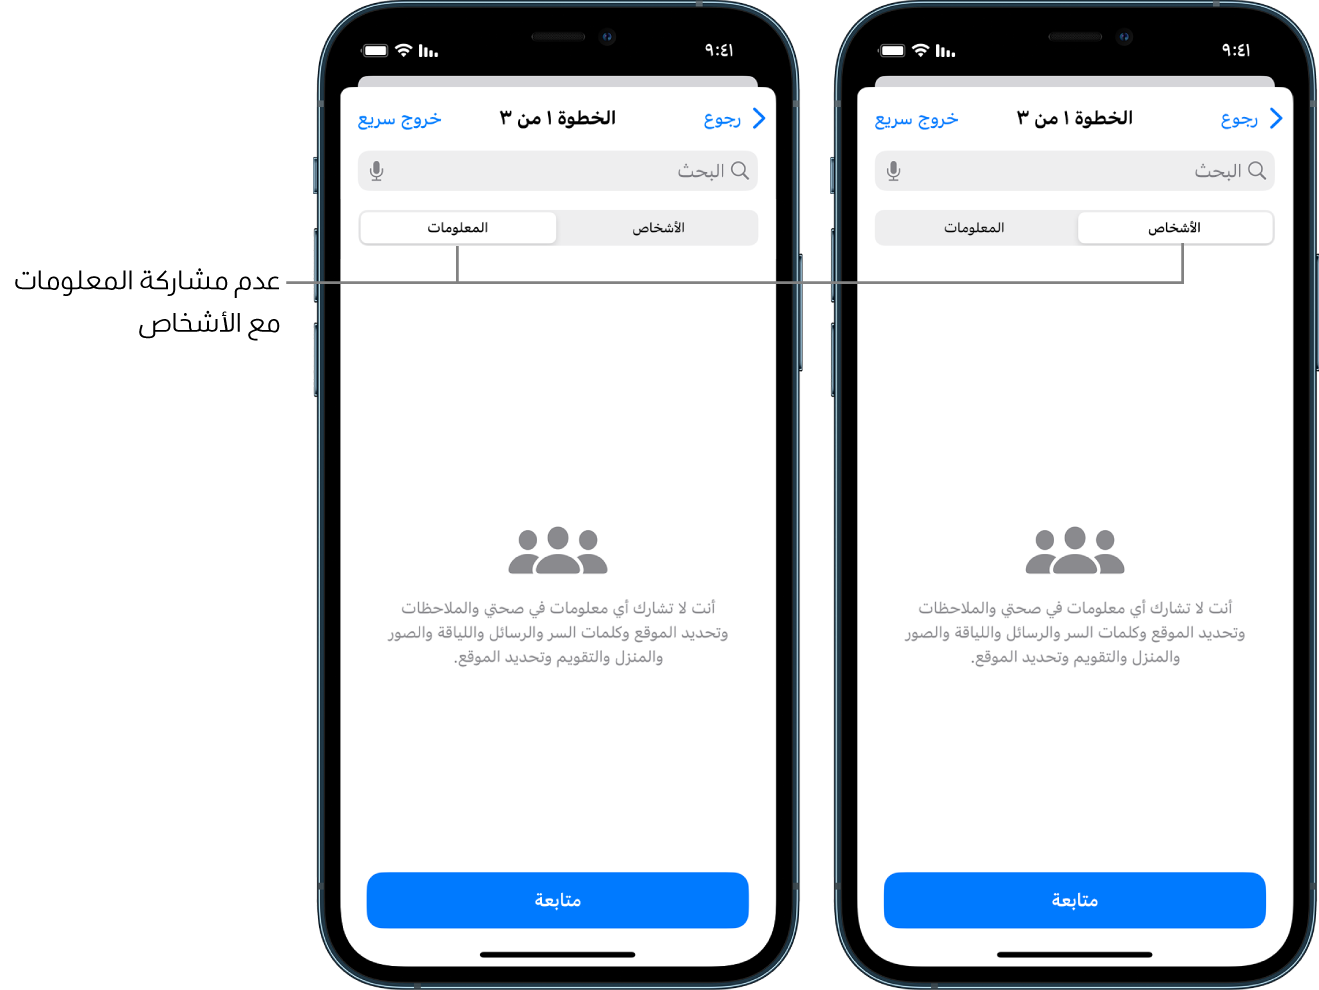 شاشة توضح أن المستخدم لا يشارك أي معلومات مع أي أشخاص آخرين من خلال تحديد علامة التبويب الأشخاص والمعلومات.